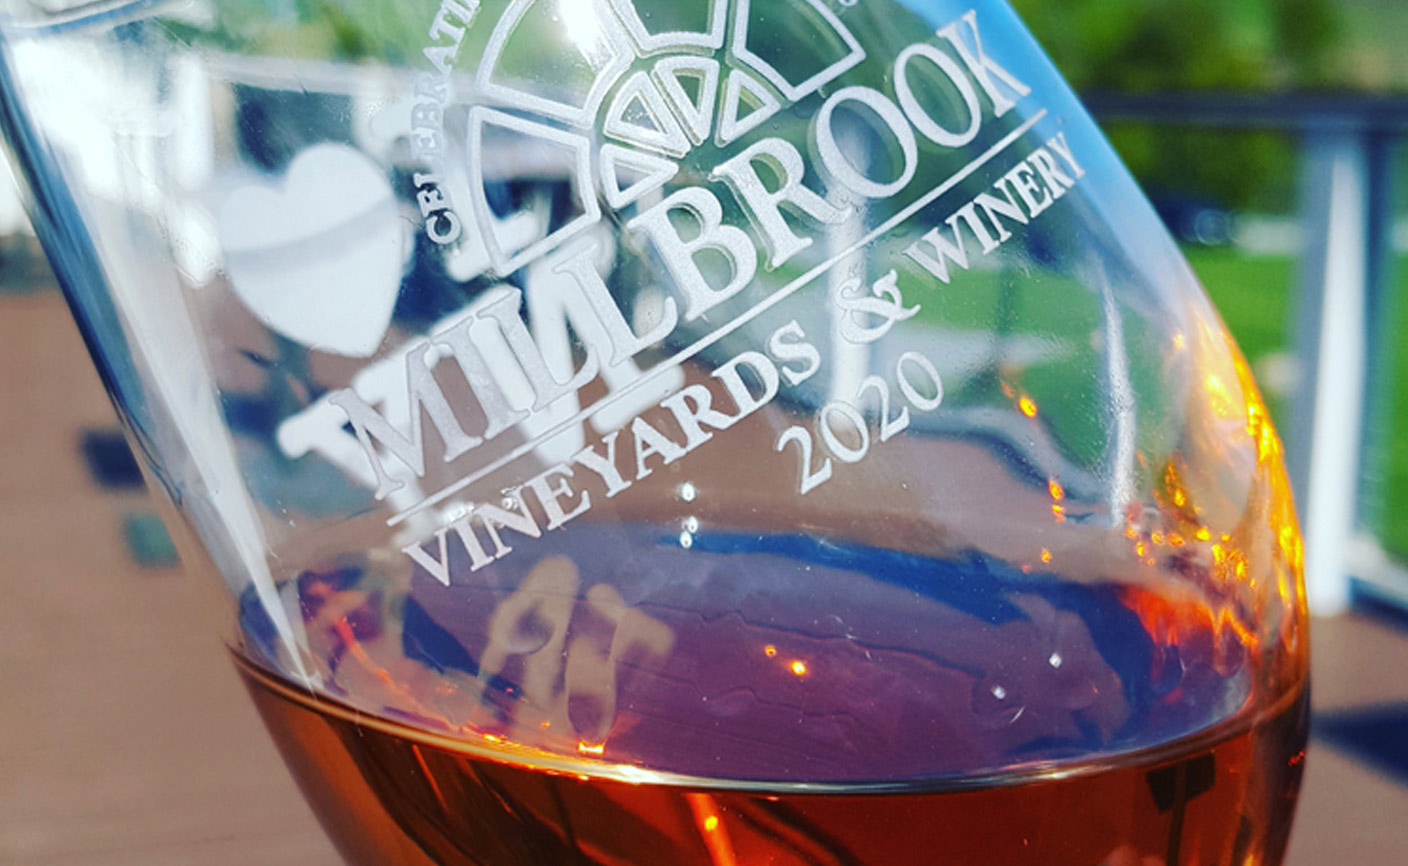 Millbrook Wine glass